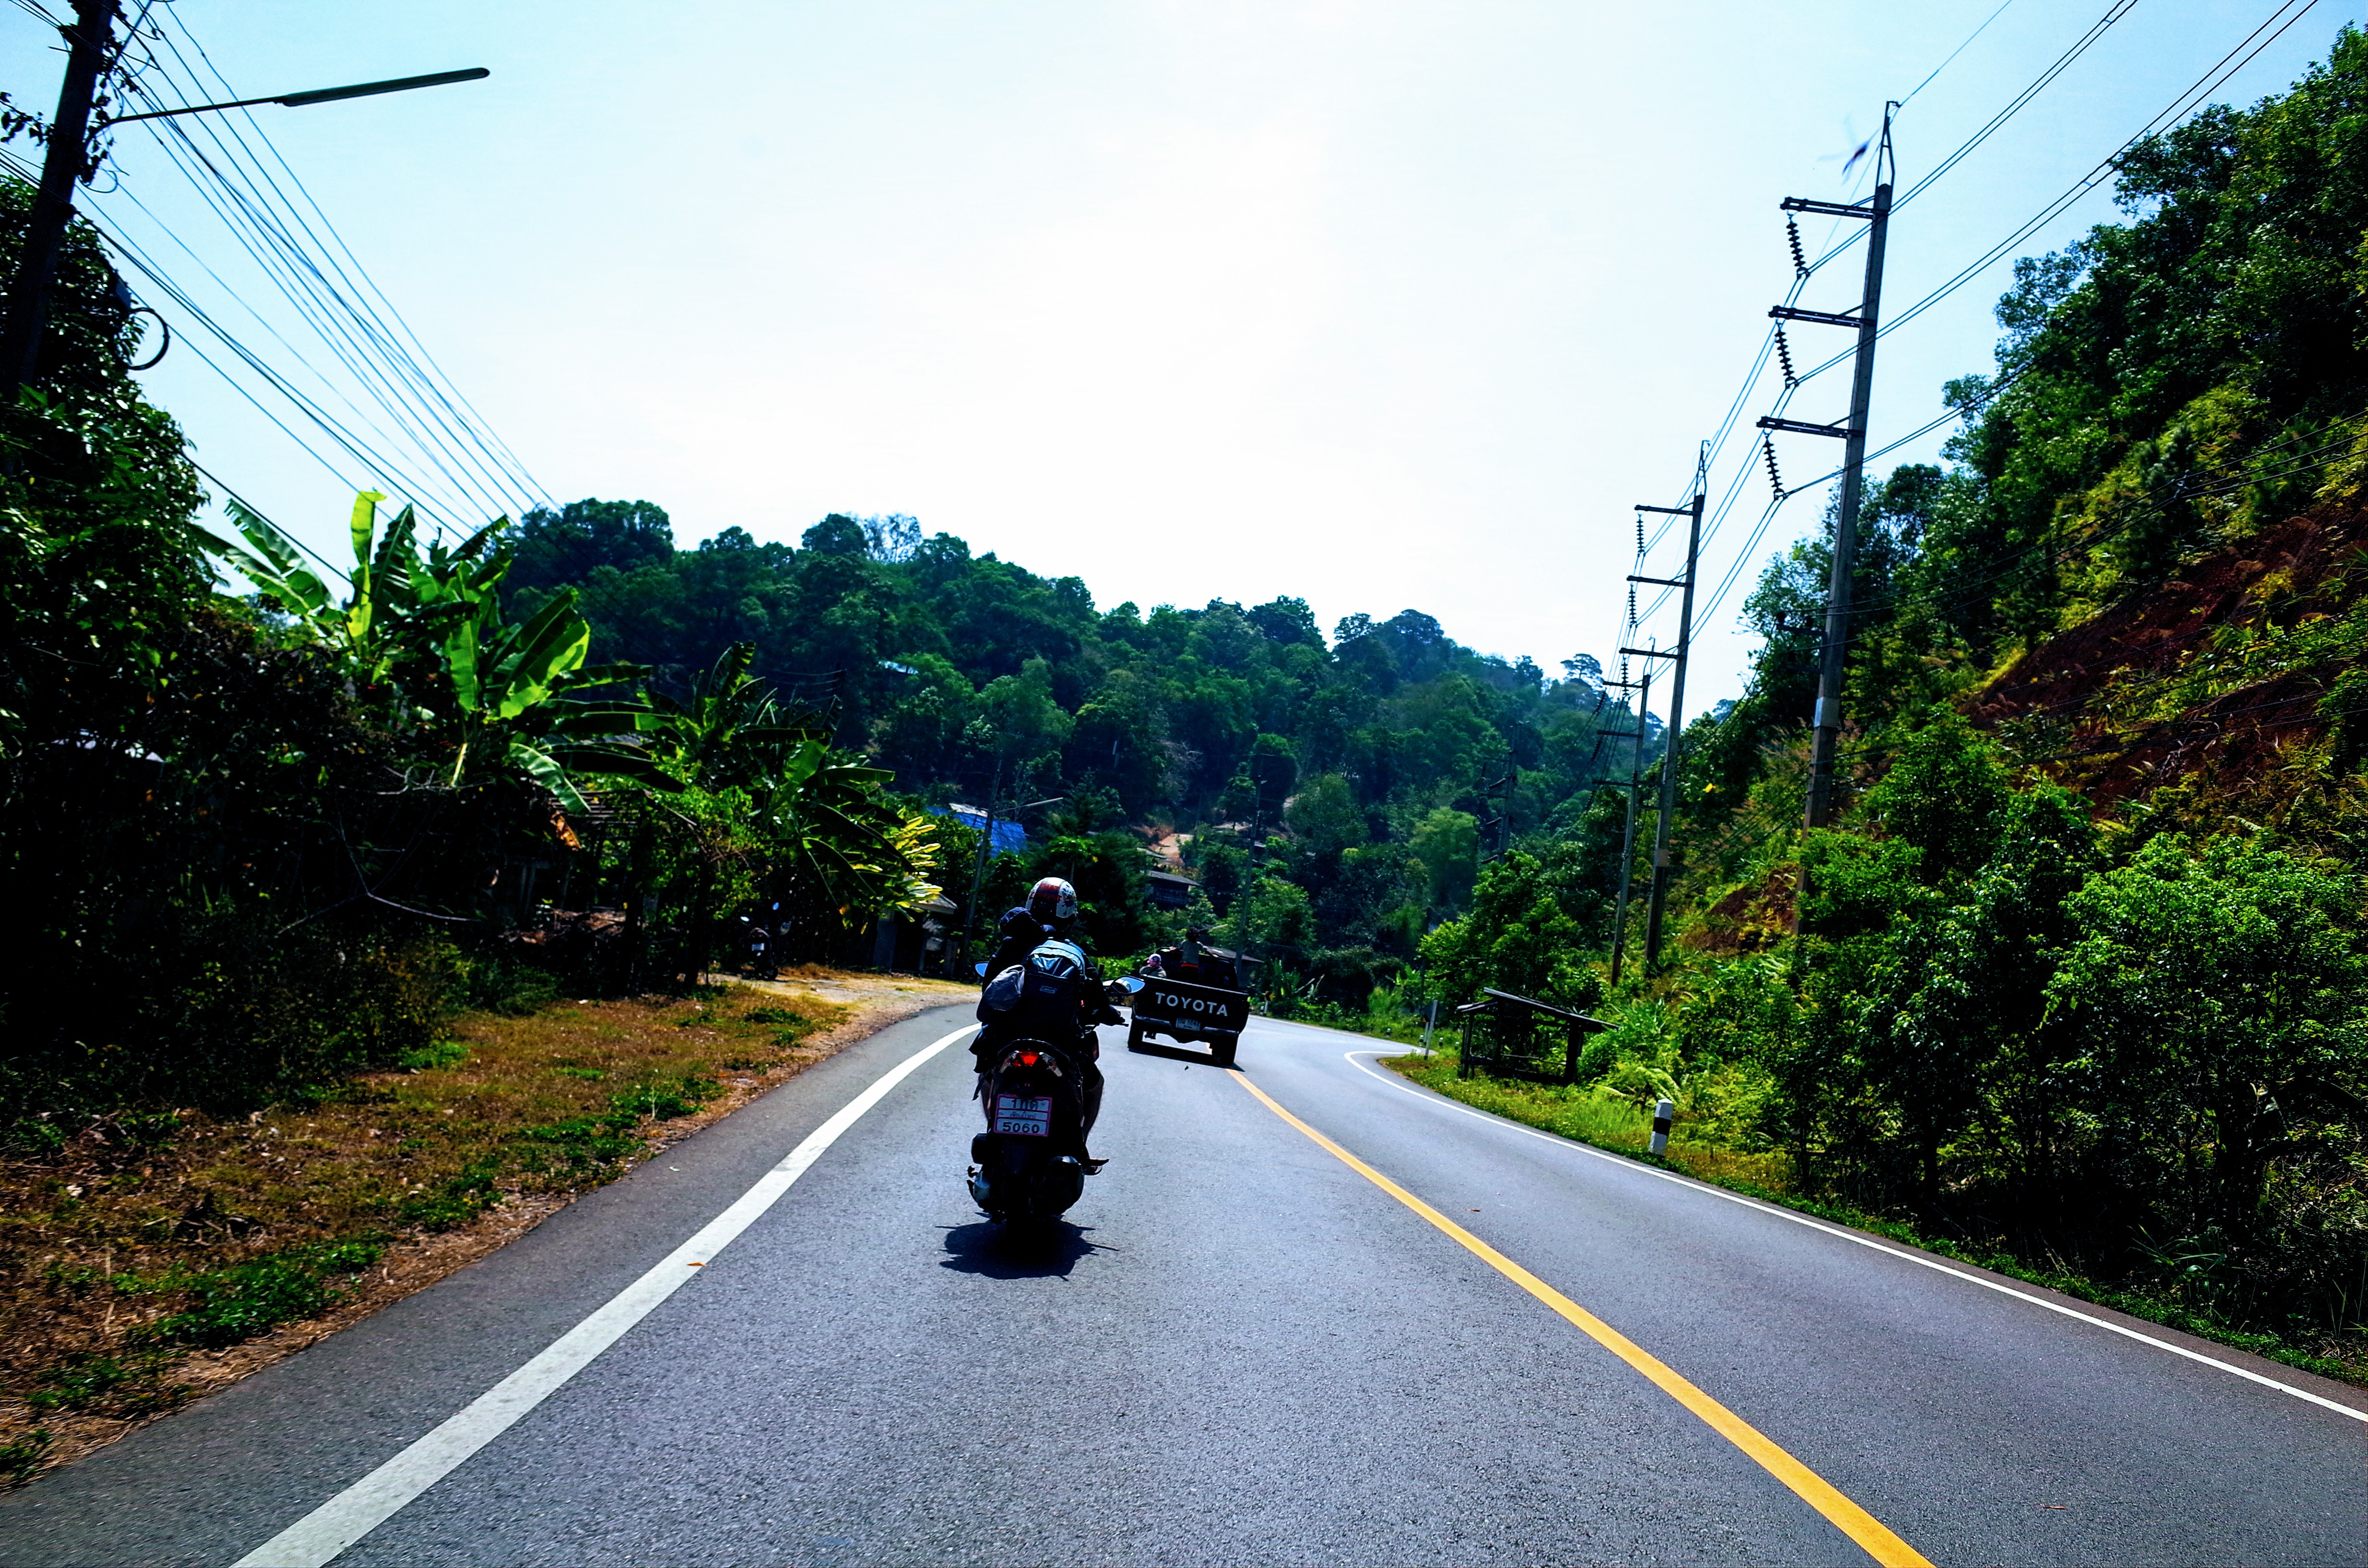 パーイからチェンマイへ向かうバイクの後ろ姿の写真です。